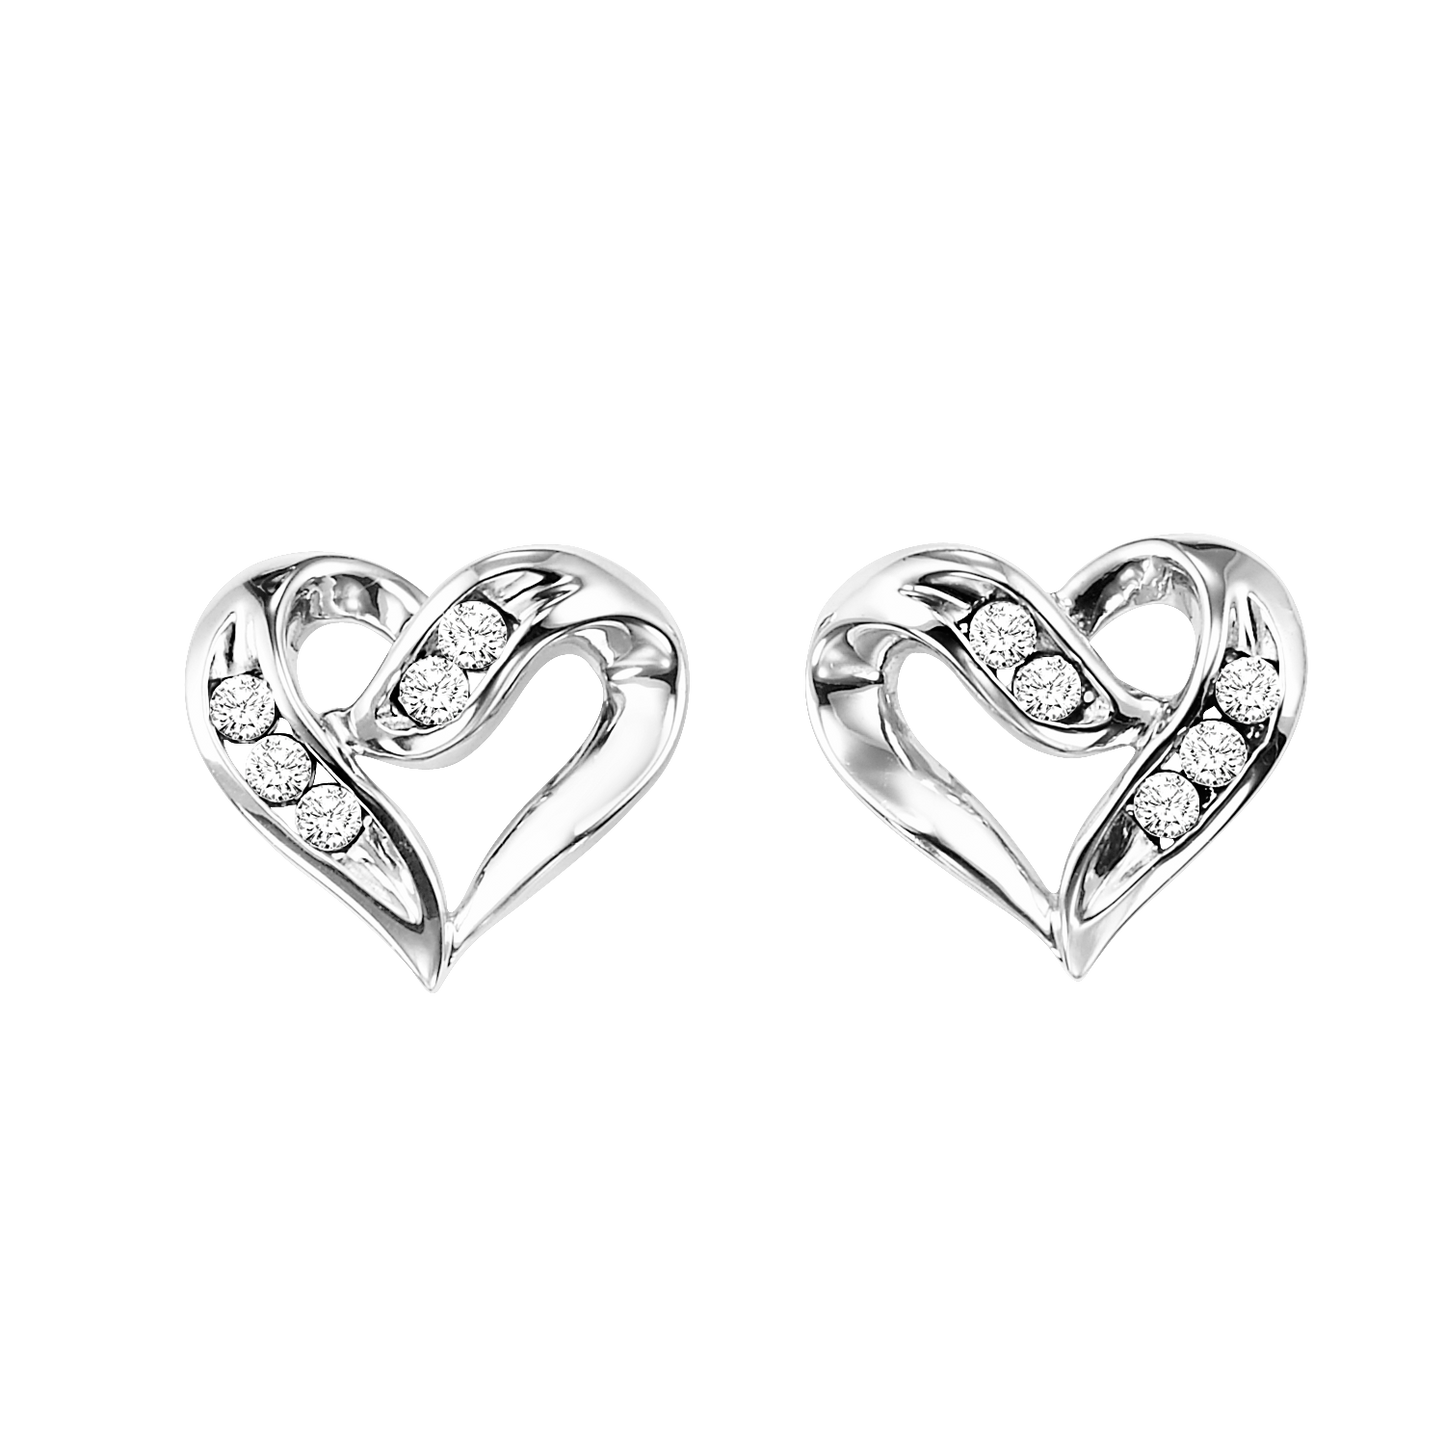 Silver Diamond Heart Earrings